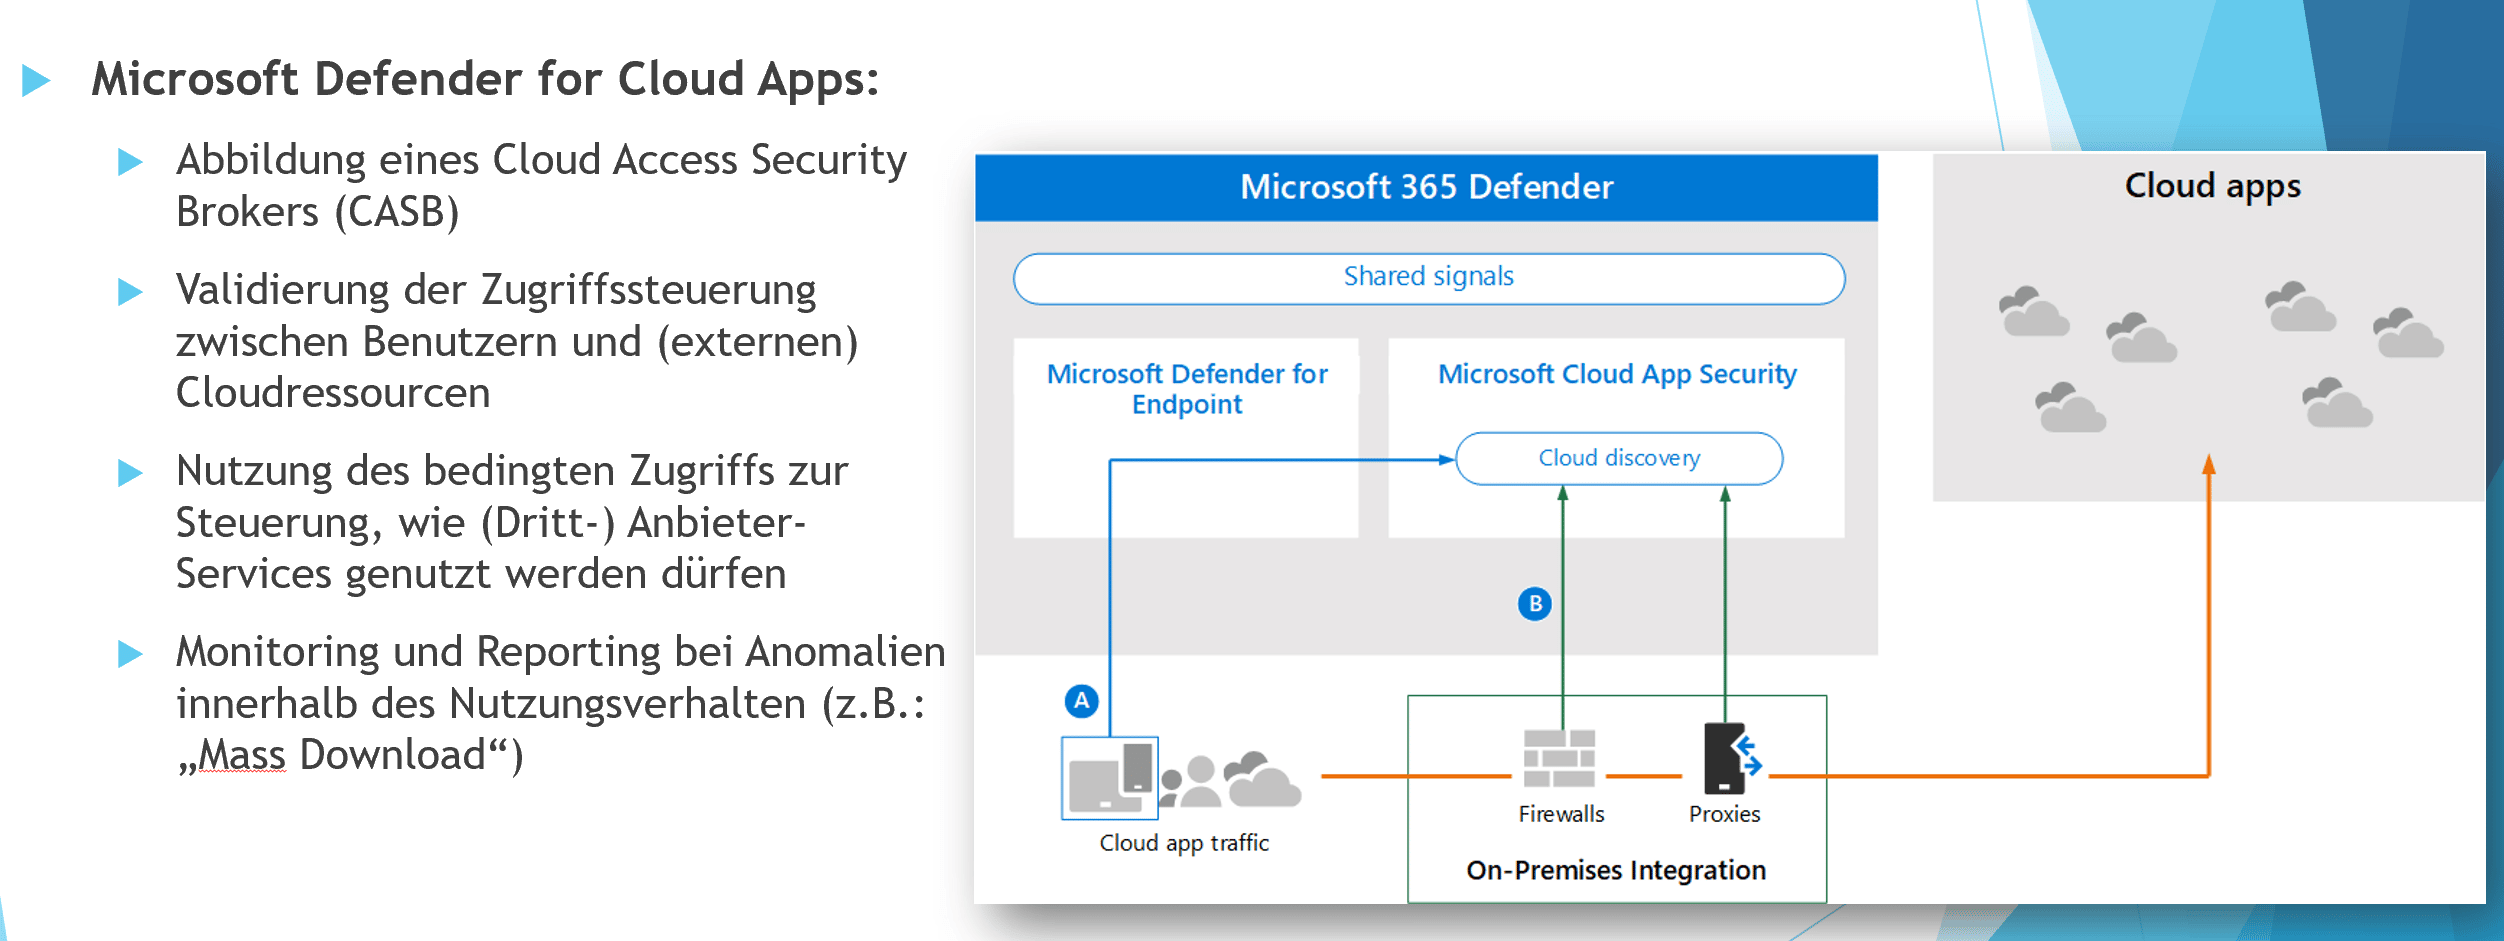 EMS_Defender_for_Cloud_Apps